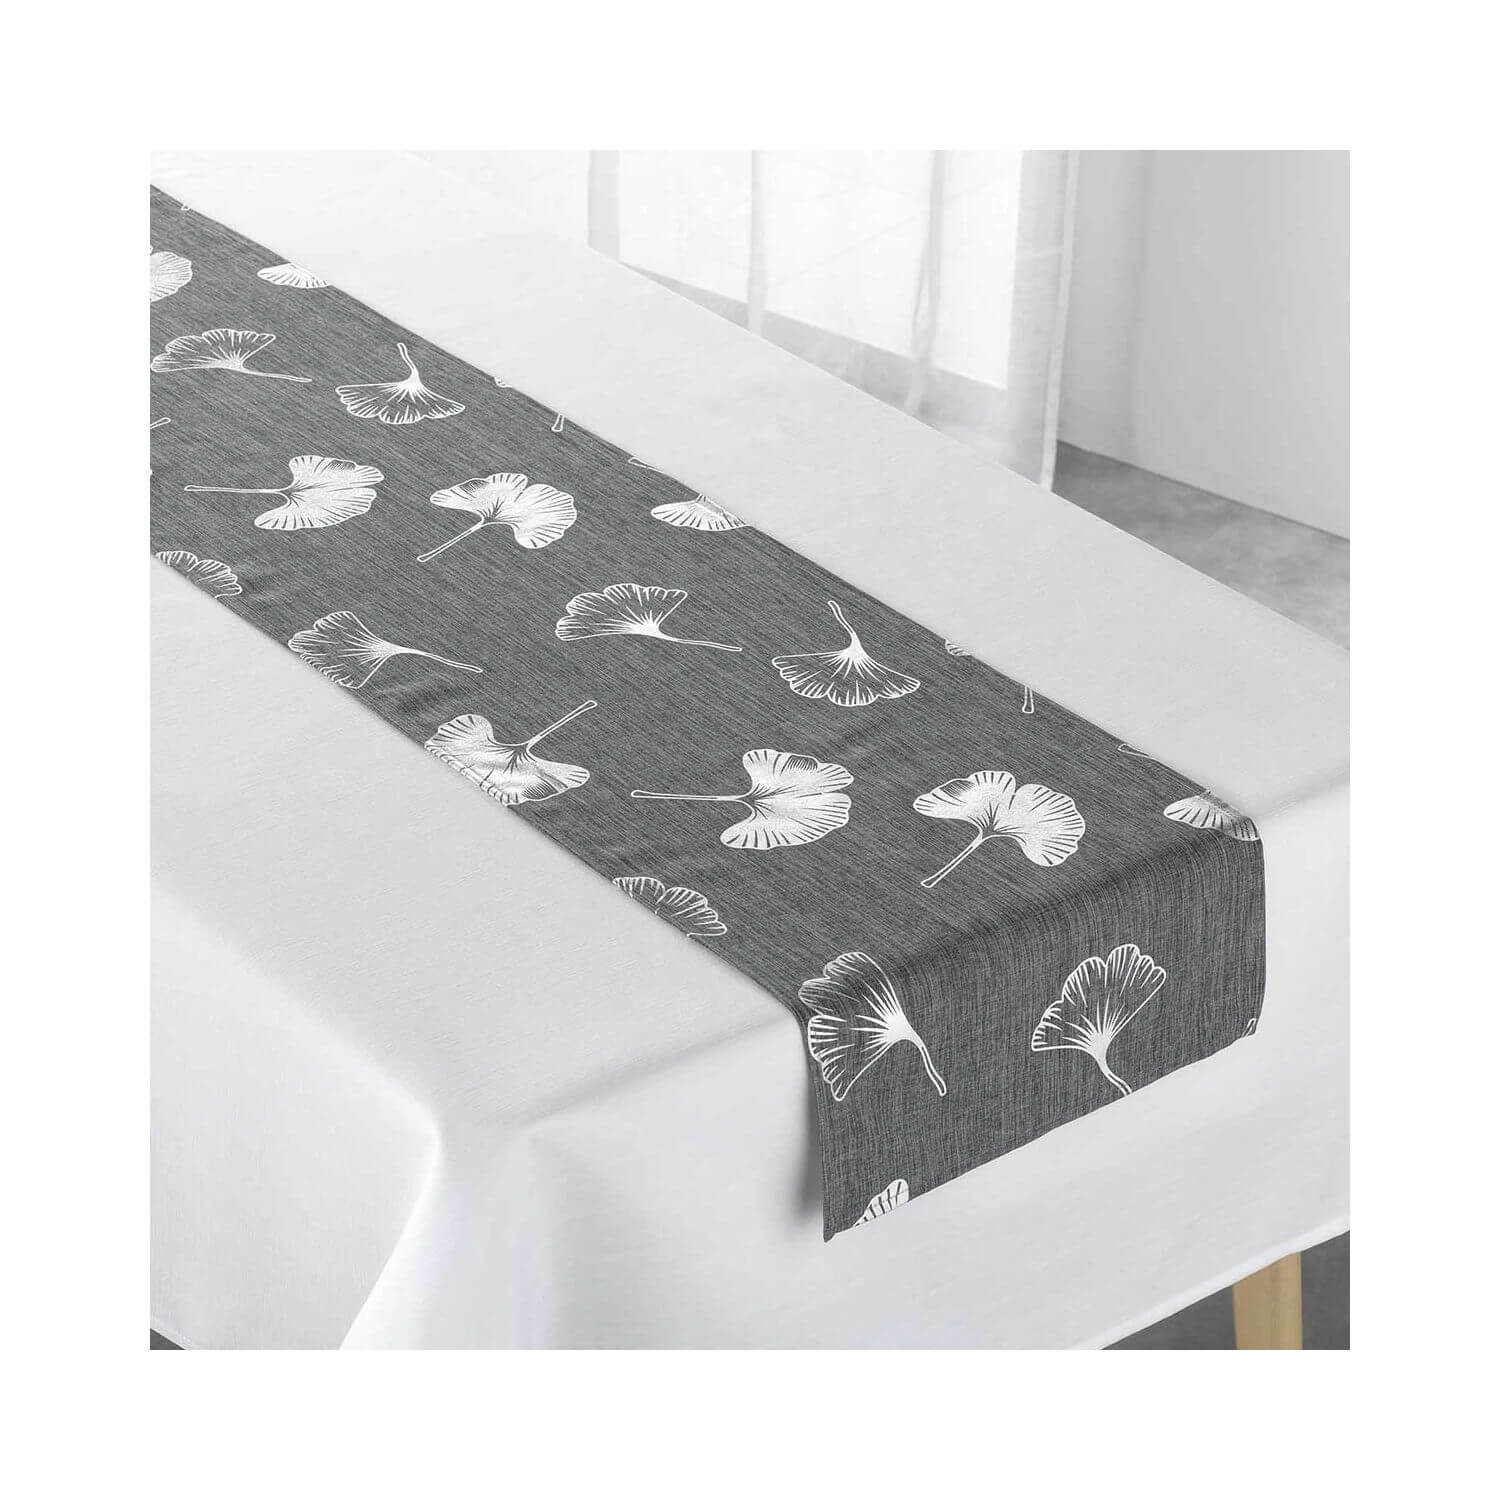 Nappe uni blanc 150 x 240 cm + Chemin de table gris motifs fleurs gingko argenté